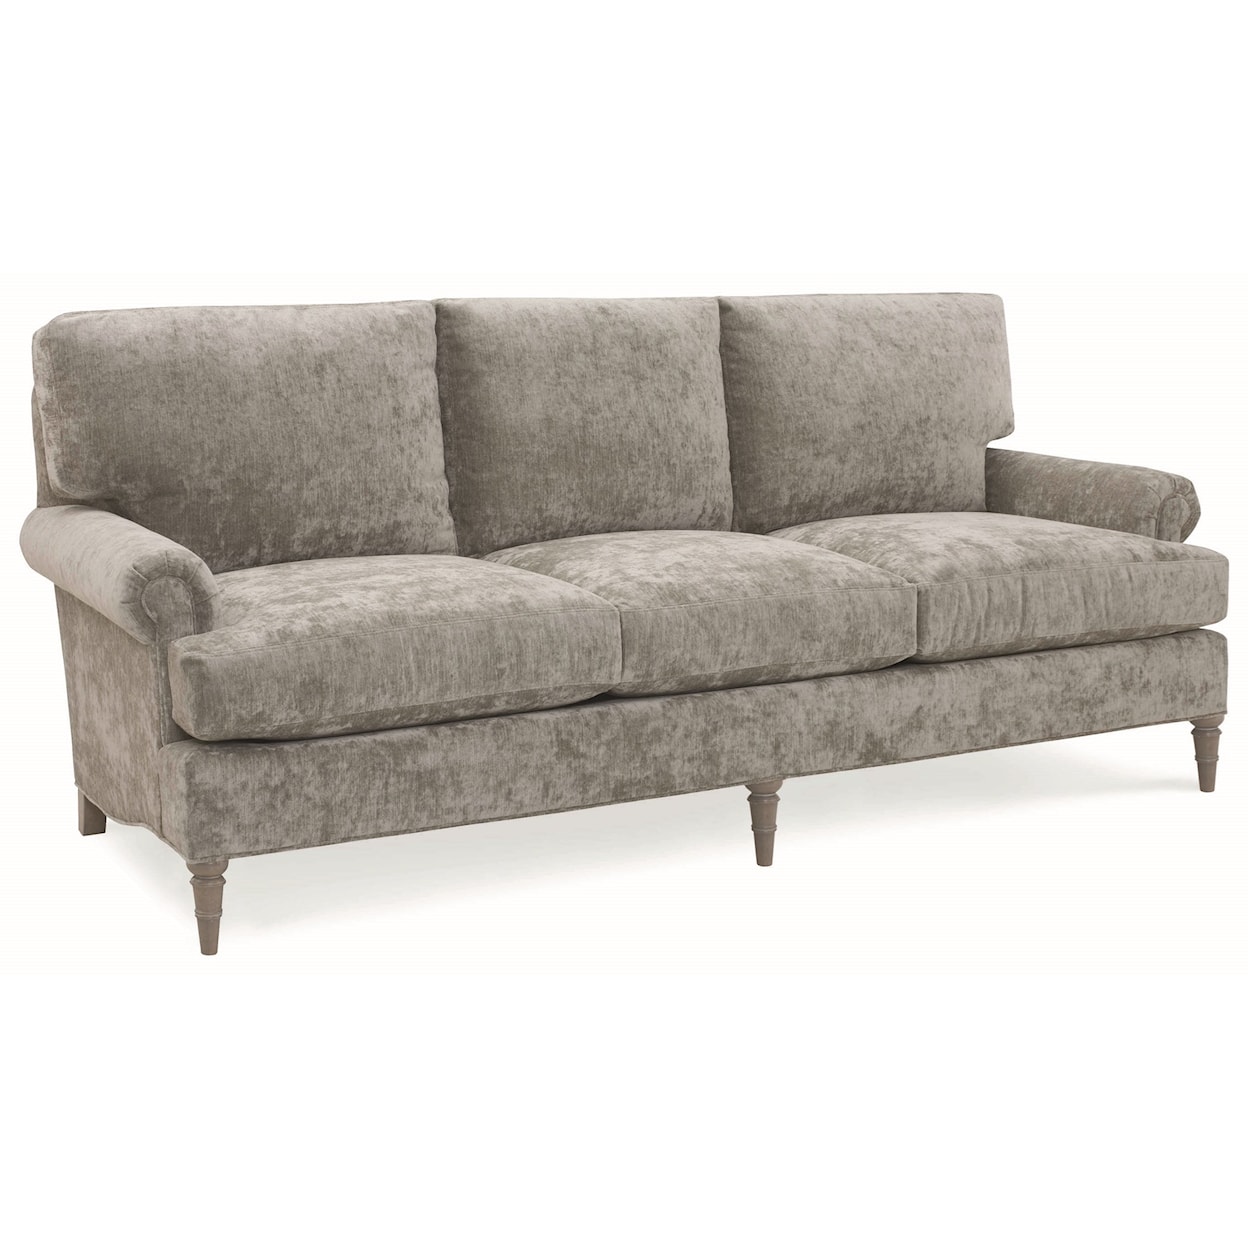 C.R. Laine Custom Design 8800 Series Customizable Sofa